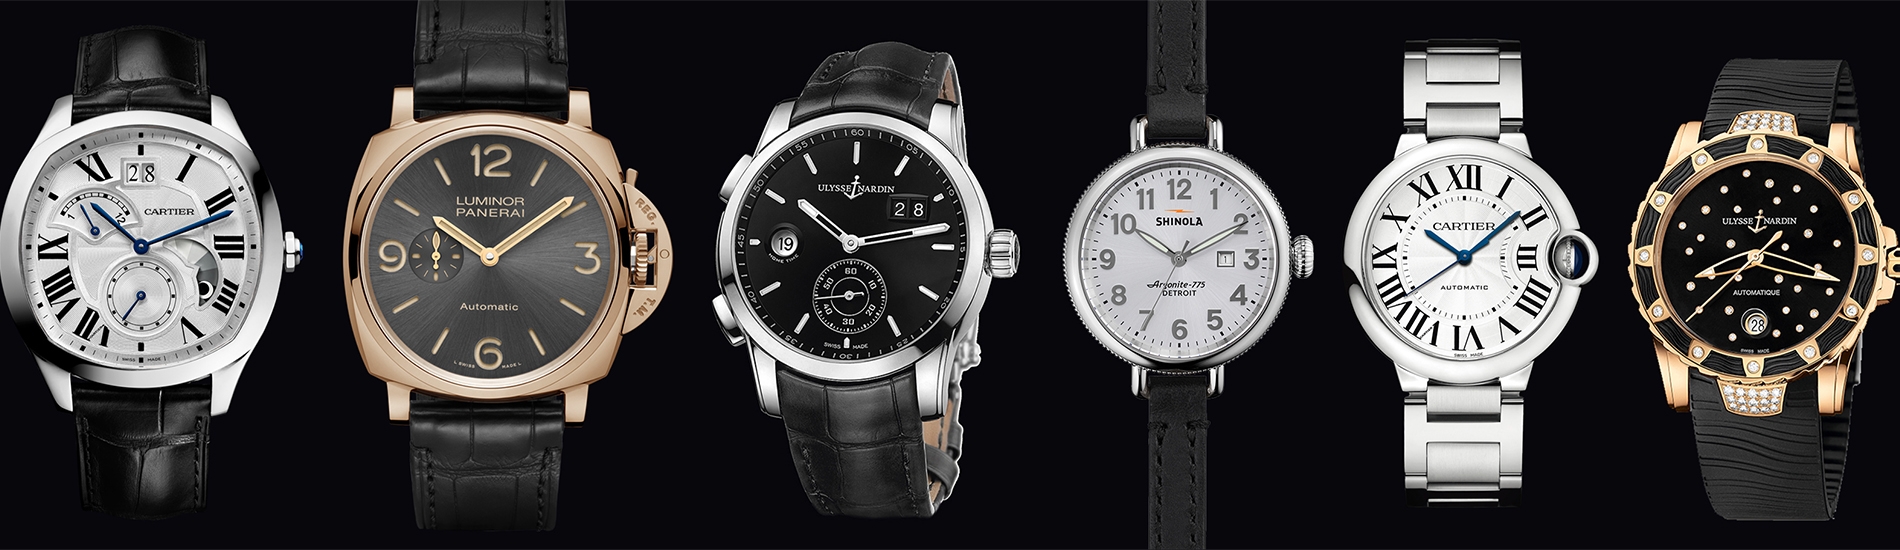 Dünyaca ünlü saat <br/> markalarını uygun fiyatlarla <br/>ve birbirinden şık saat <br/>modelleri ile size sunuyoruz